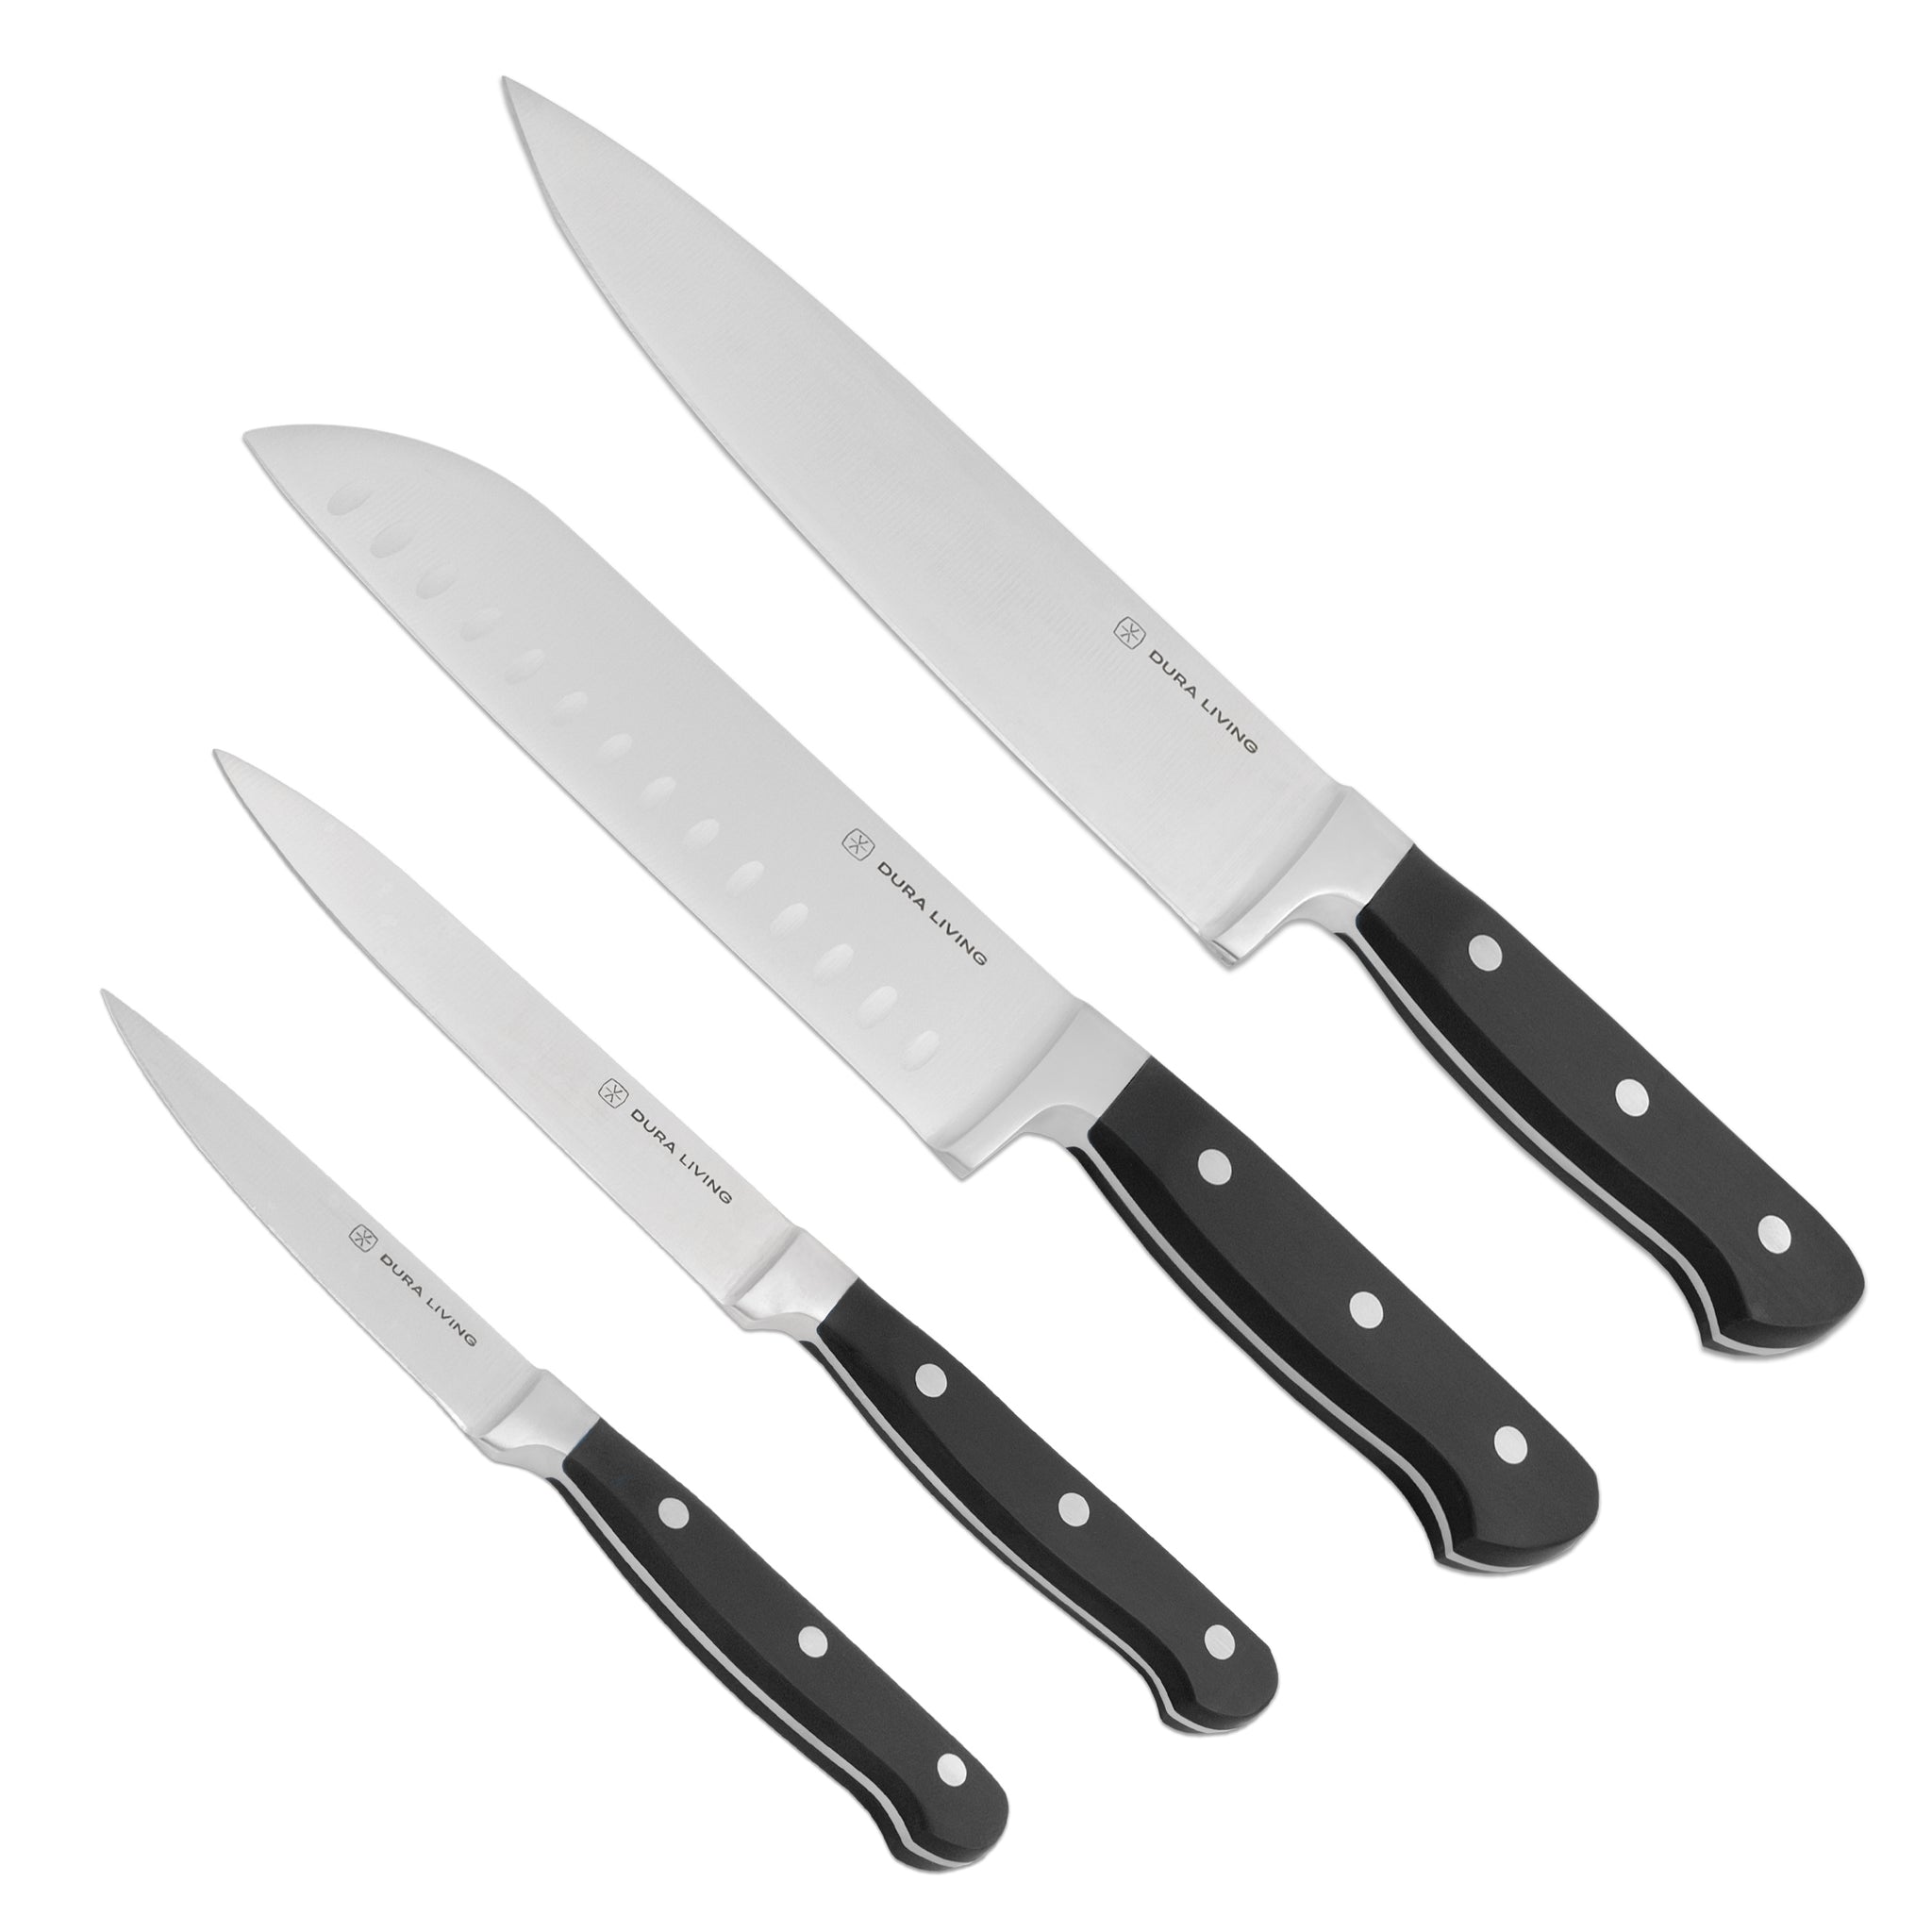 Superior 4 Piece Kitchen Knife set - Black